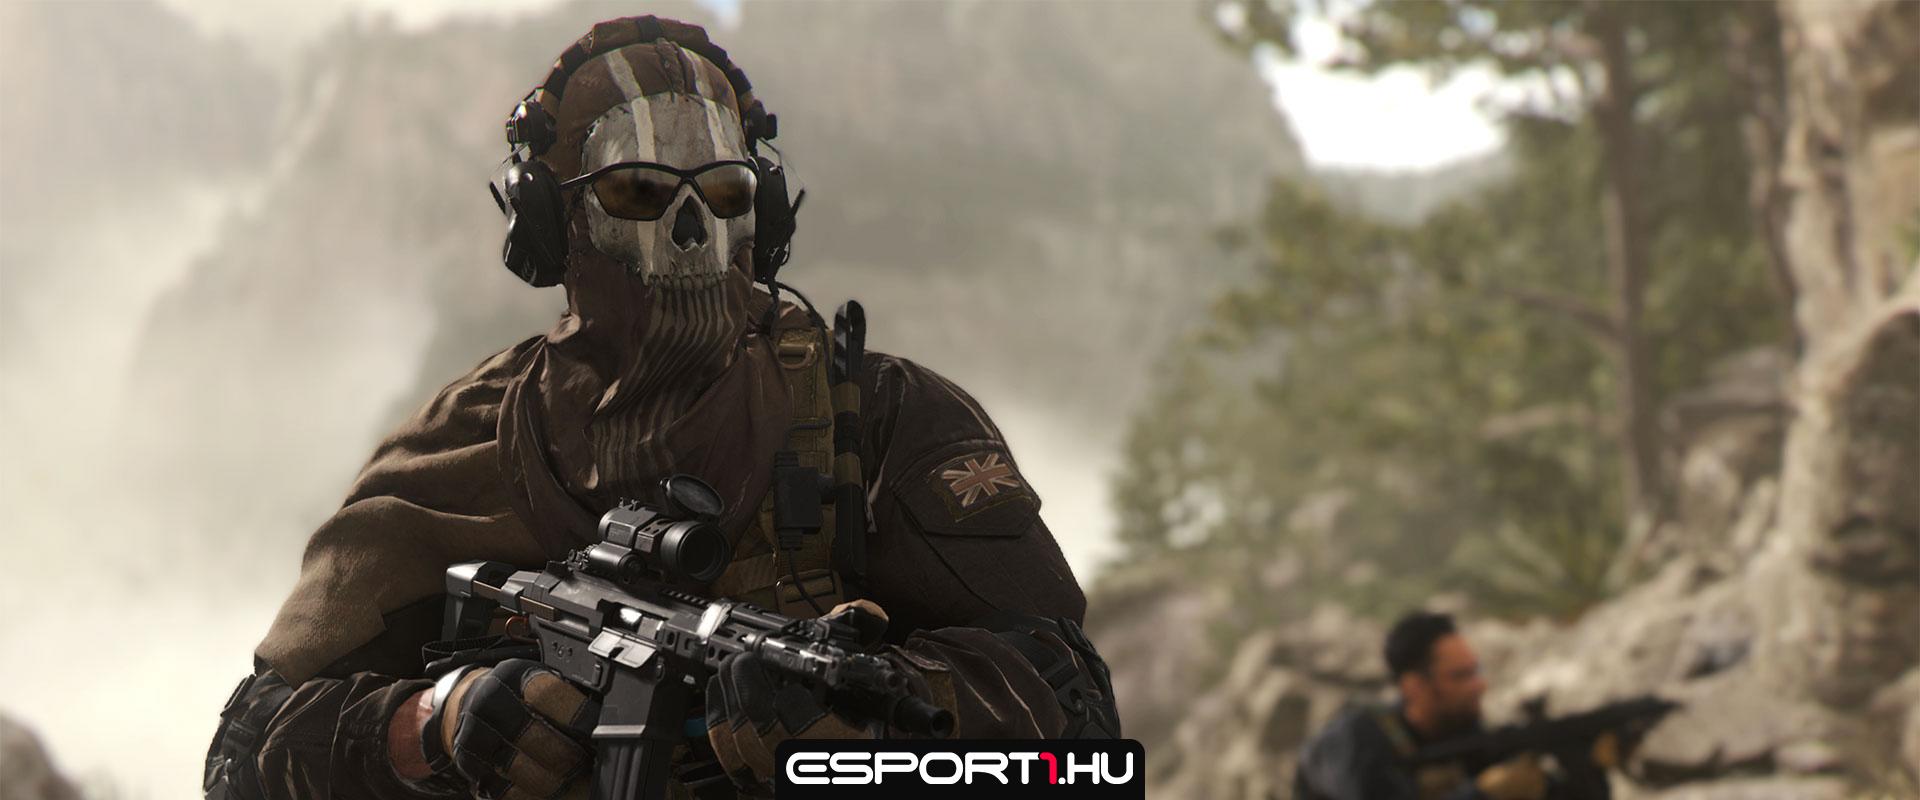 Úgy tűnik a Modern Warfare 2-ben is visszatér egy idegesítő fegyver